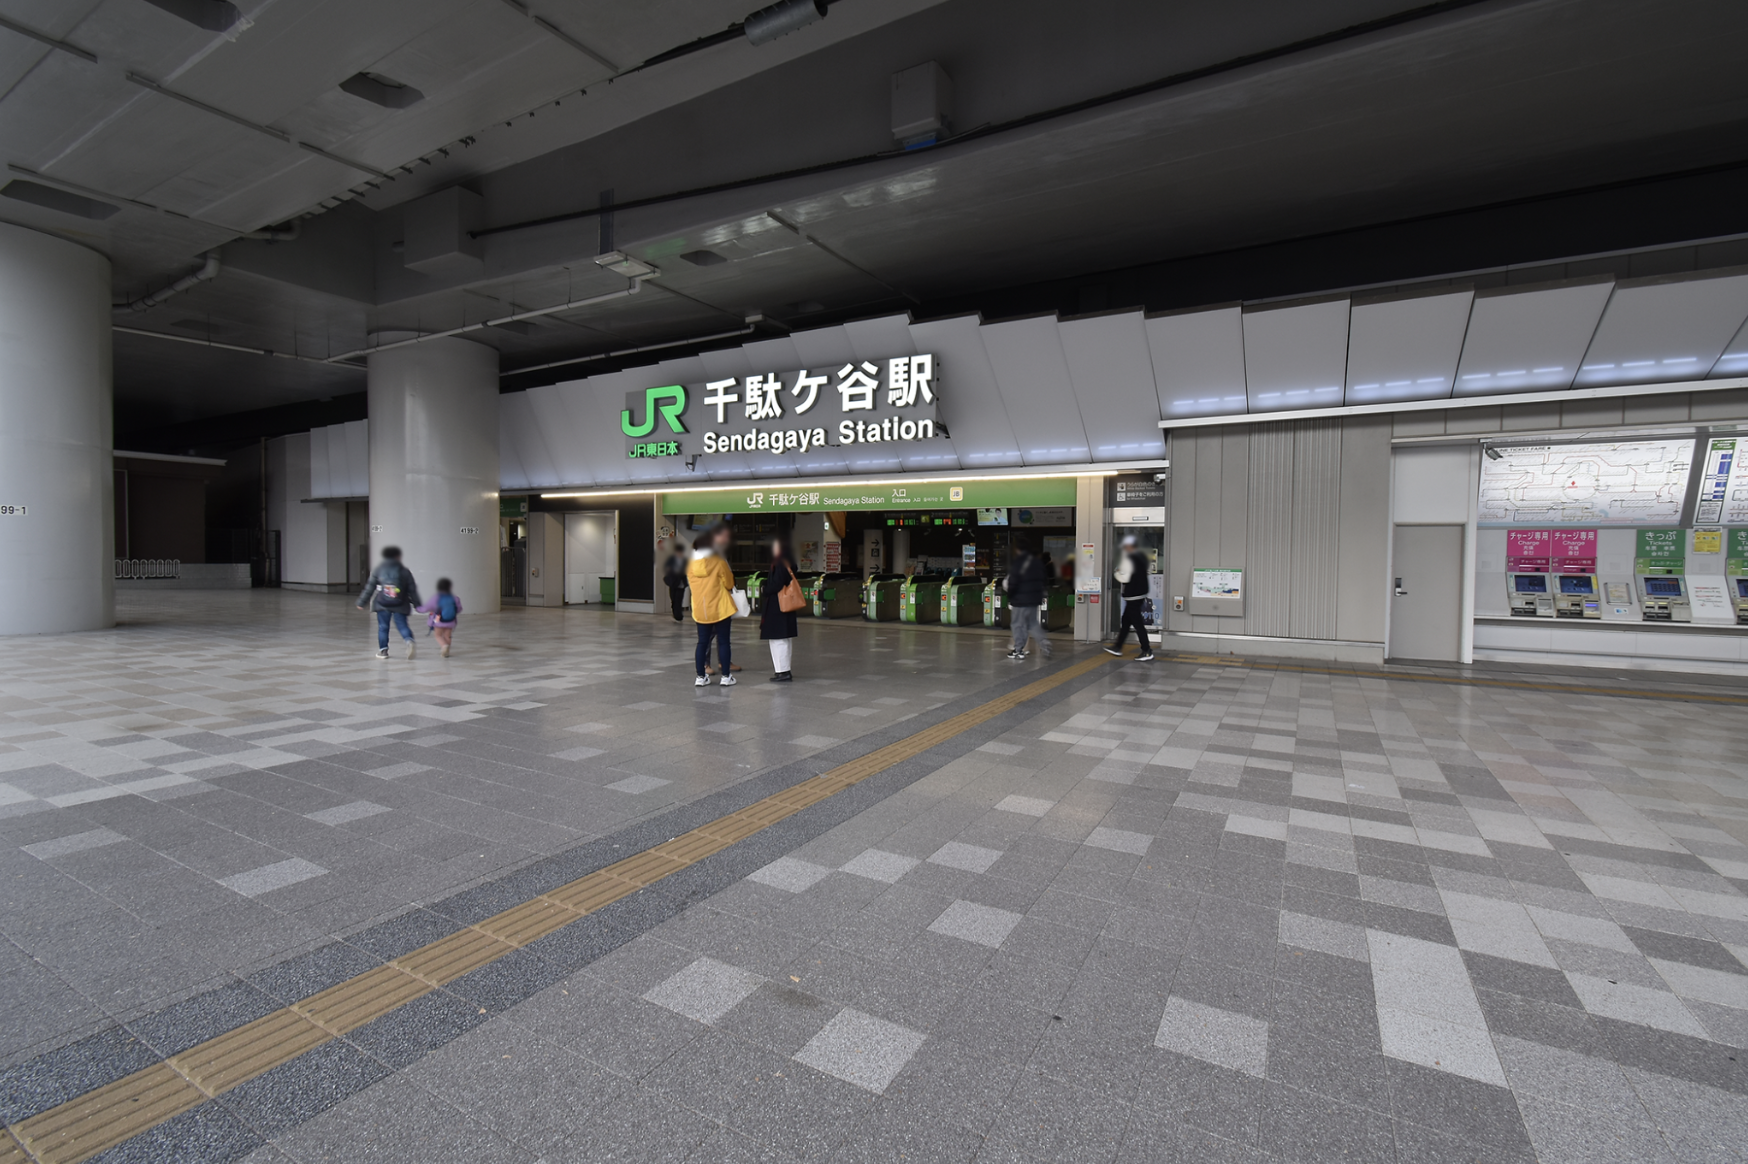 千駄ヶ谷駅は改札が一つなので間違わずに出られます。こちらからは徒歩14分です